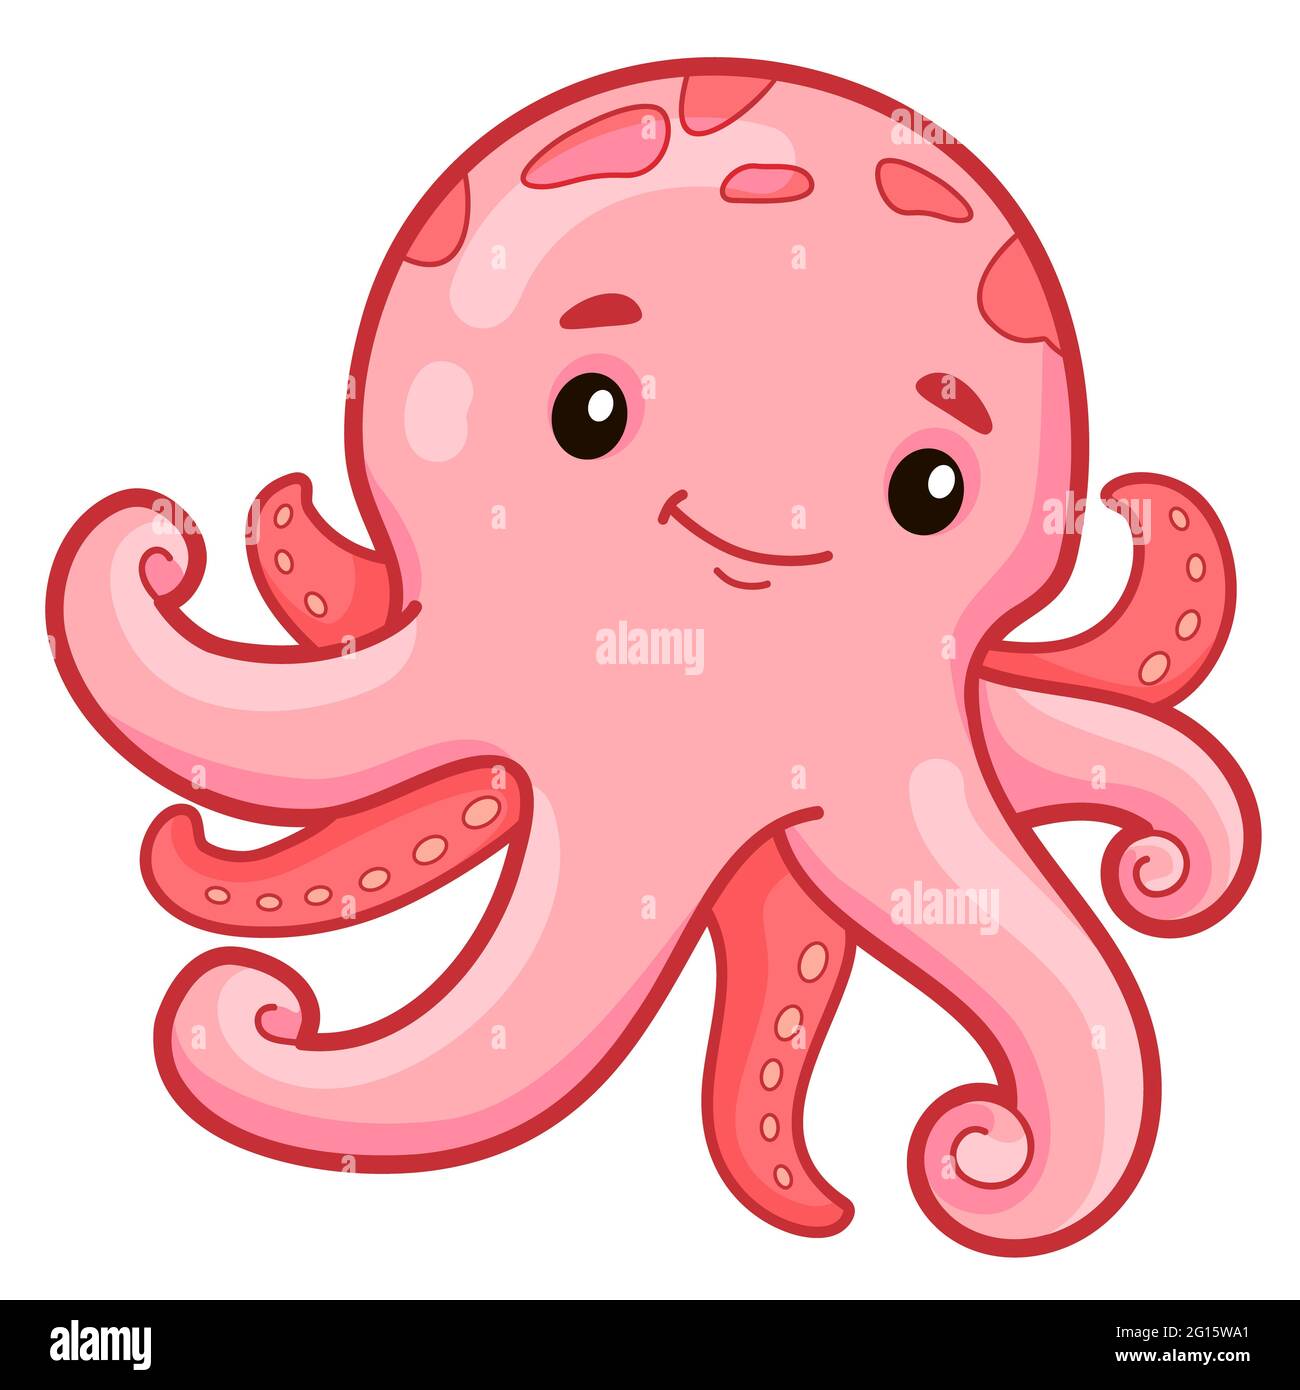 Cute octopus cartoon. Octopus clipart illustration Stock Photo - Alamy